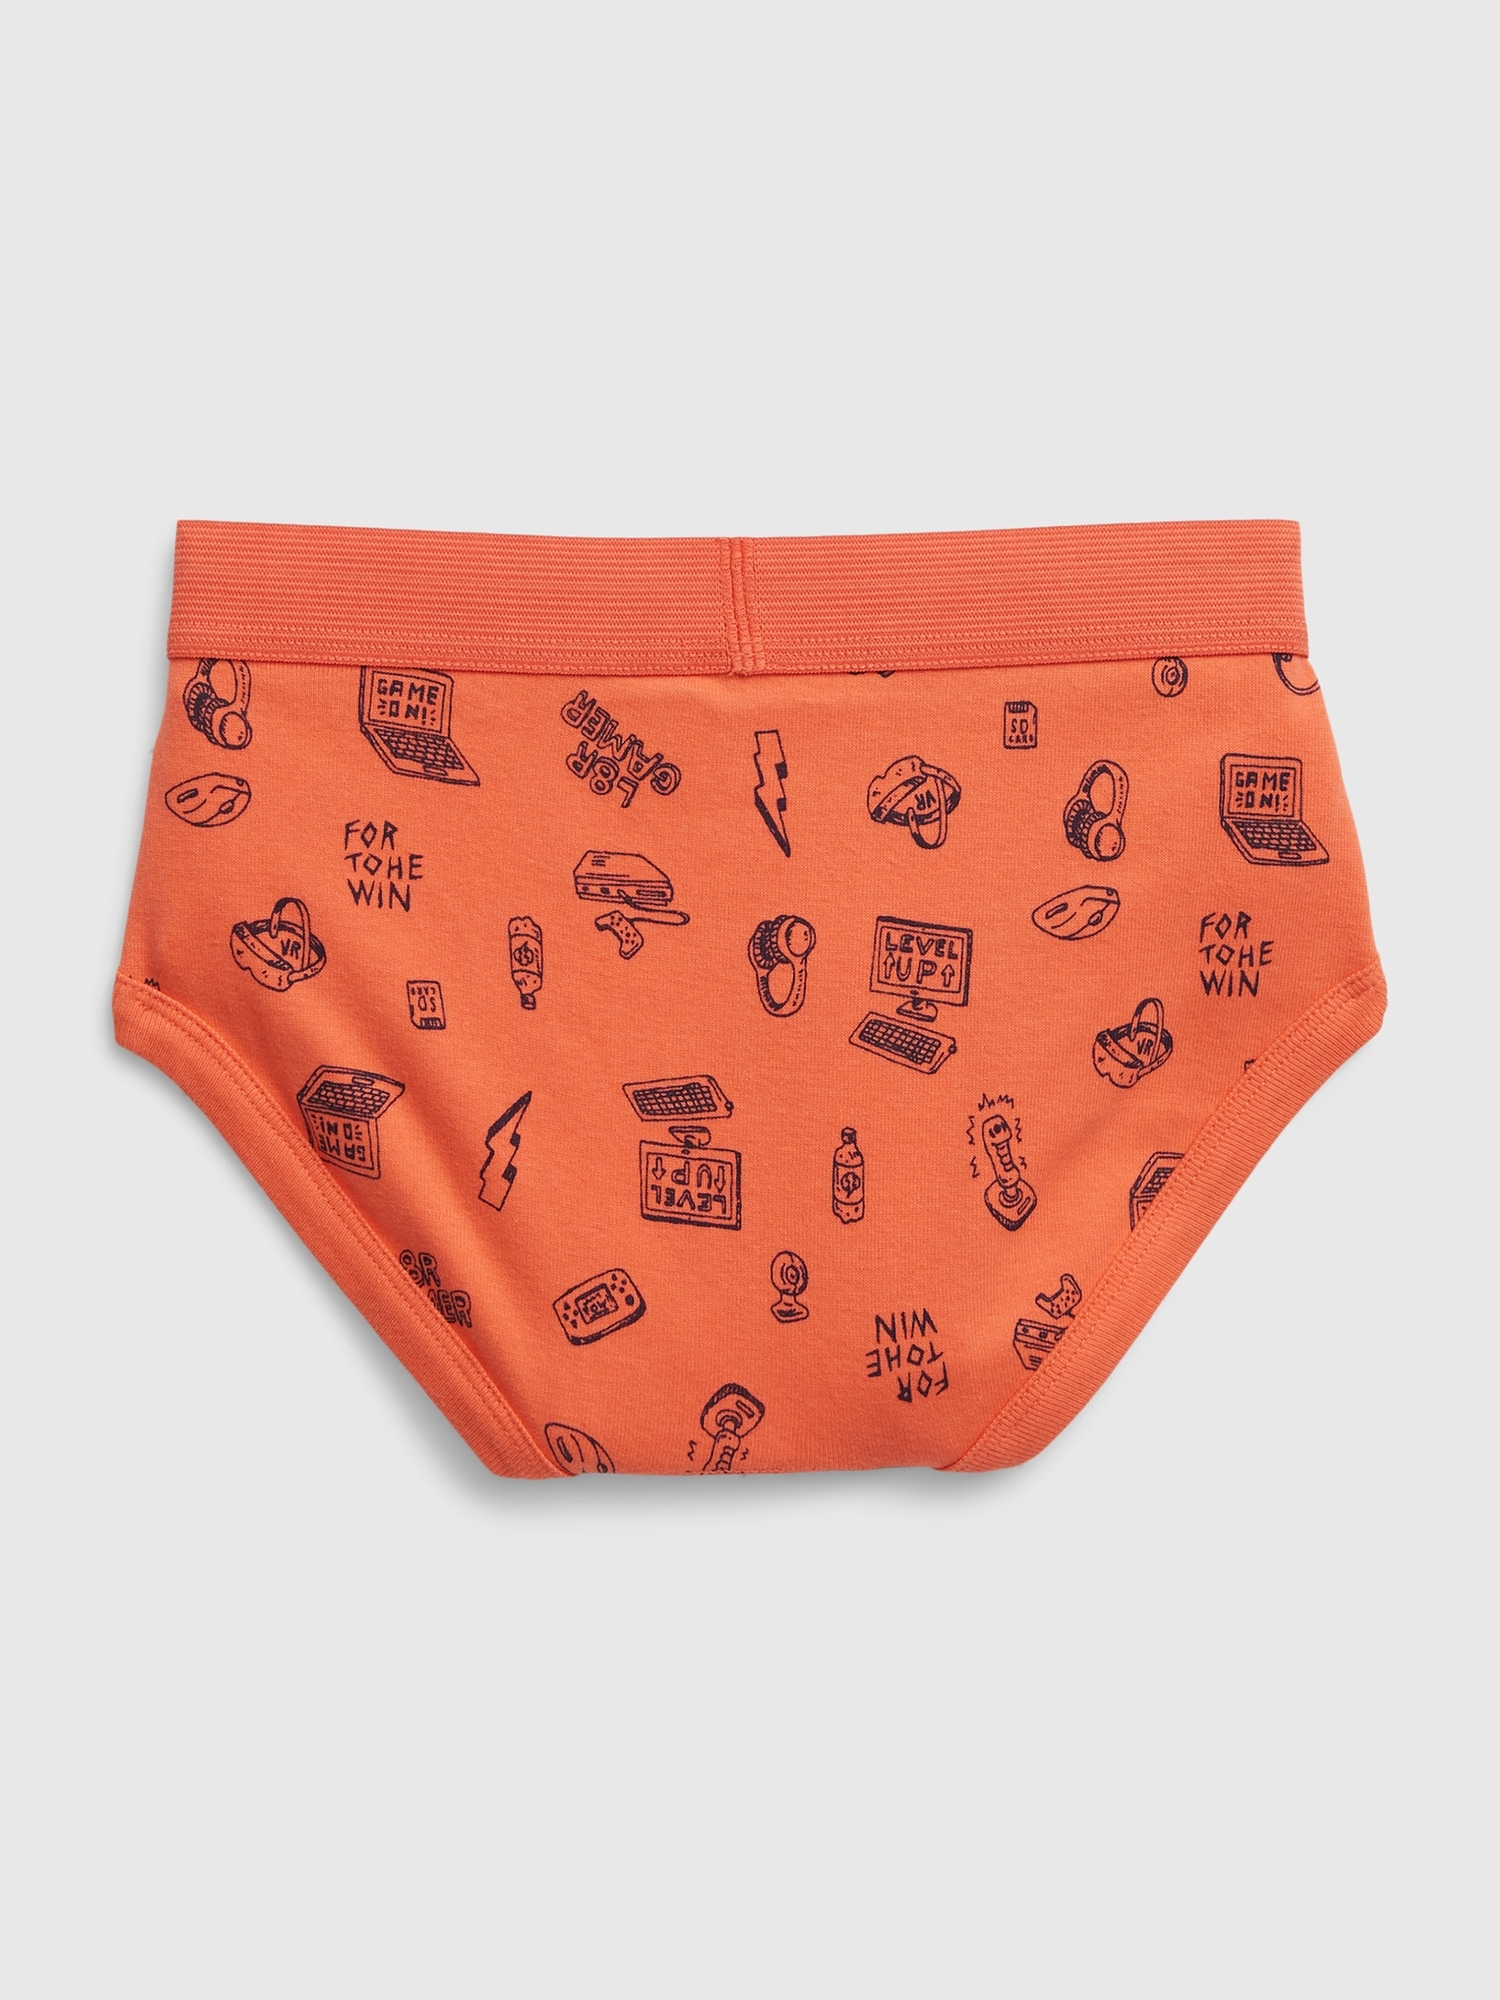 Underwear for Little Gem - The Gem